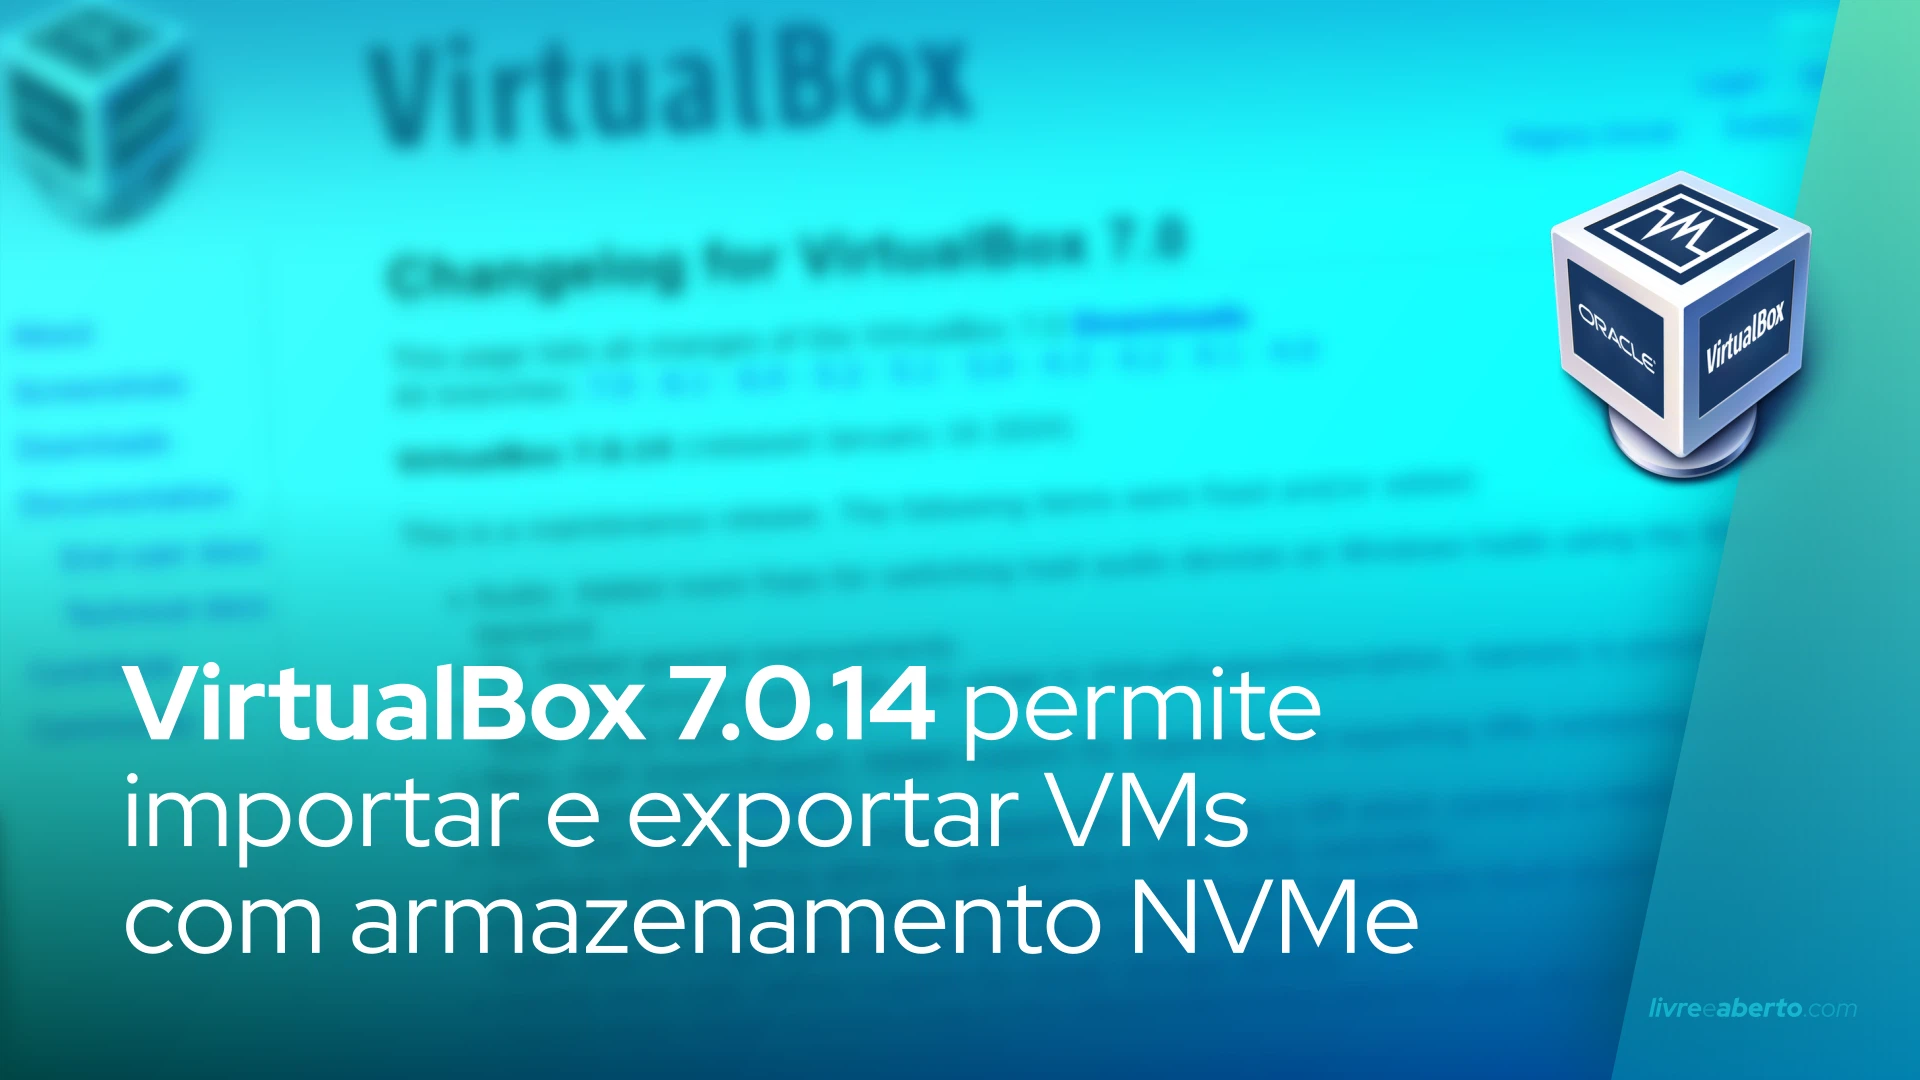 VirtualBox 7.0.14 permite importar e exportar VMs com controladores de armazenamento NVMe